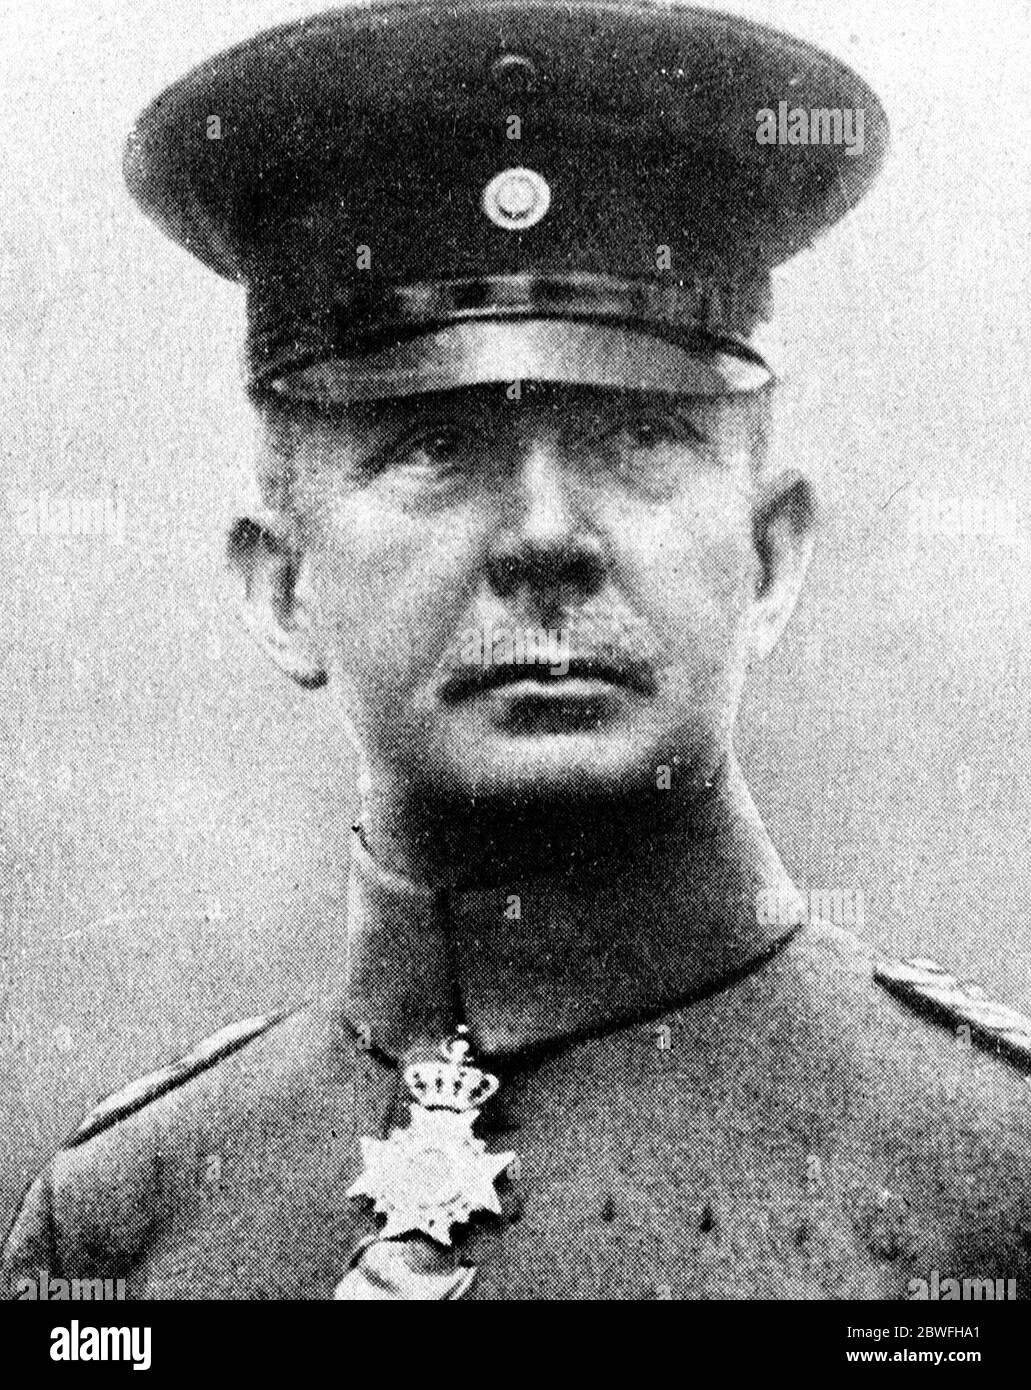 Général Muller, dictateur militaire de Saxe le dictateur militaire de Saxe . La sécurité et la police d'État ont été placées sous son contrôle le 22 octobre 1923 Banque D'Images